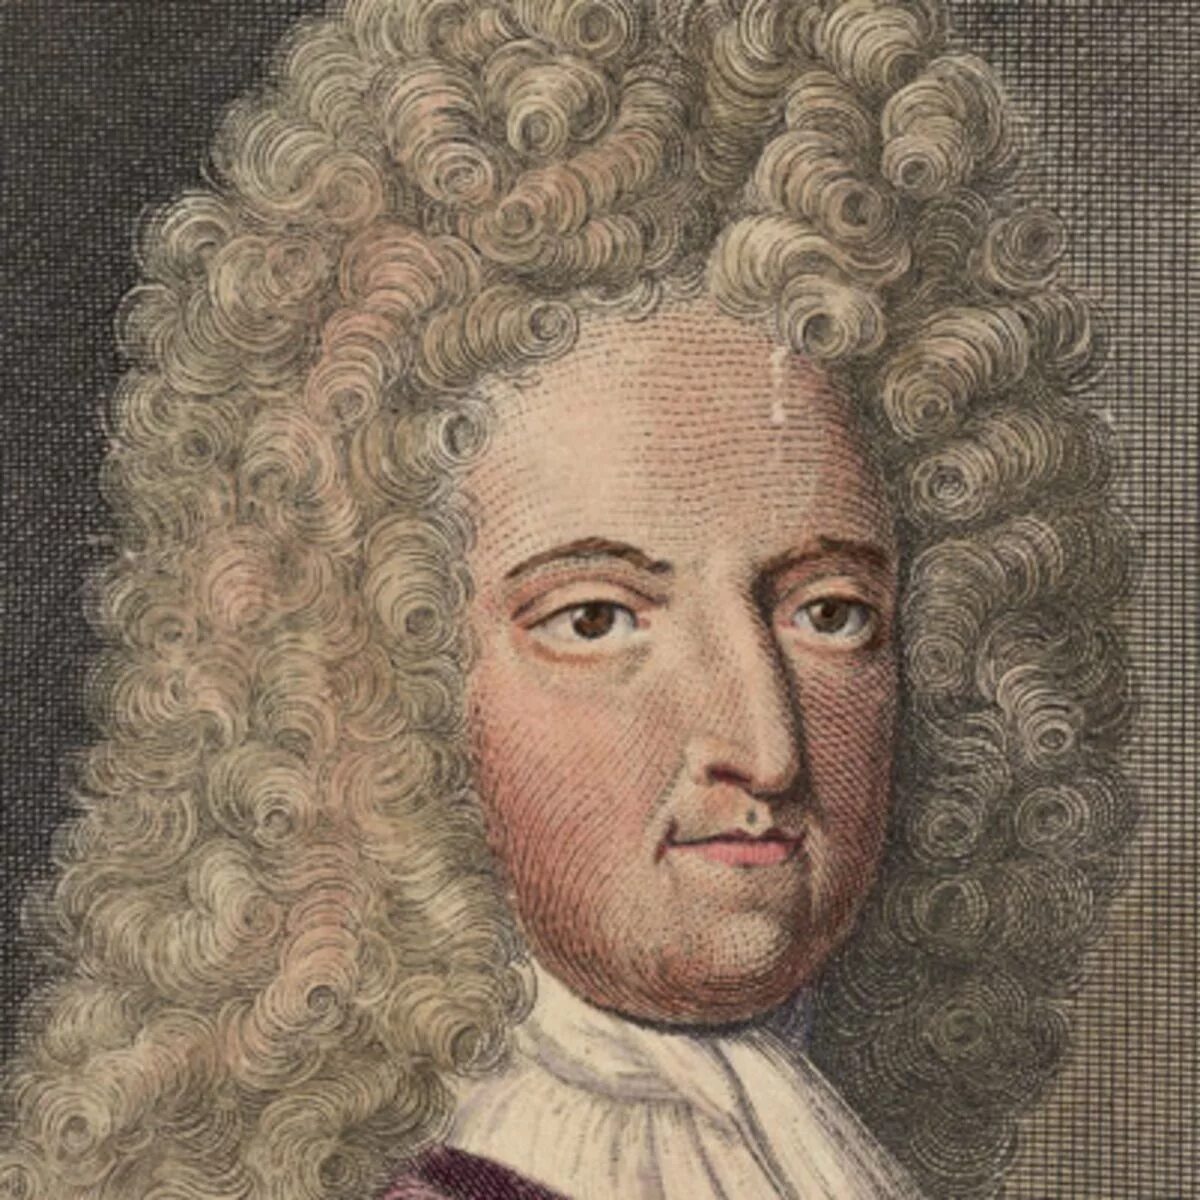 Даниель Дефо (1660-1731). Даниэль Дефо портрет. Д. Дефо (1660-1731), английский писатель и публицист,. Даниэль Дефо писатель.